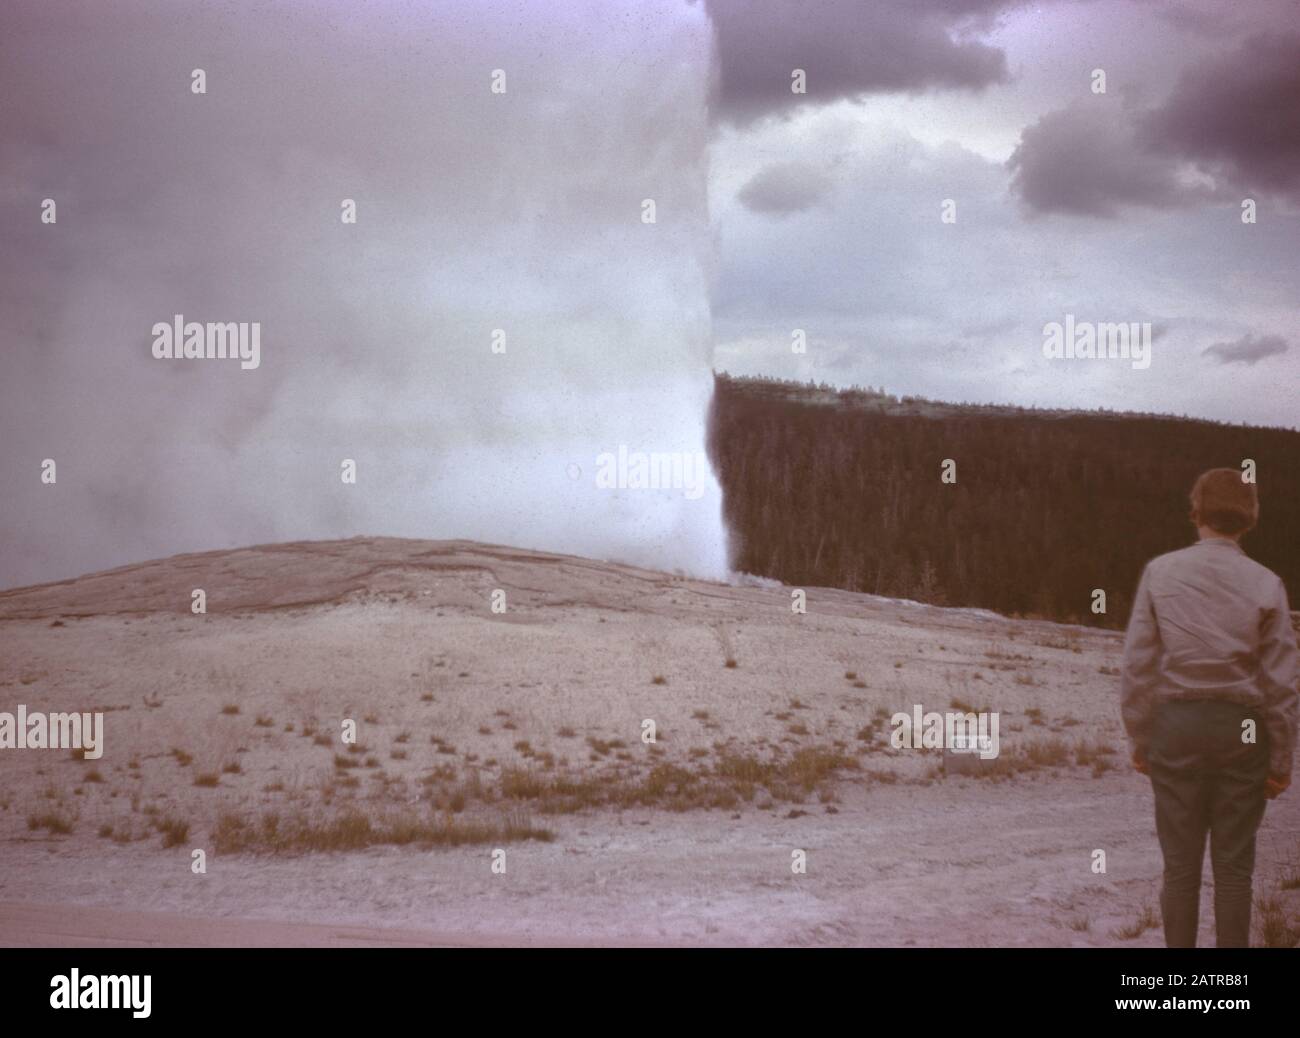 Nakuläres Foto, aufgenommen auf einer analogen 35-mm-Filmtransparenz, vermutet, dass es Touristen mit Geysir, 1965, abbildet. Zu den wichtigsten Themen/Objekten gehören Himmel, Geysir, Landschaft und Natur. () Stockfoto